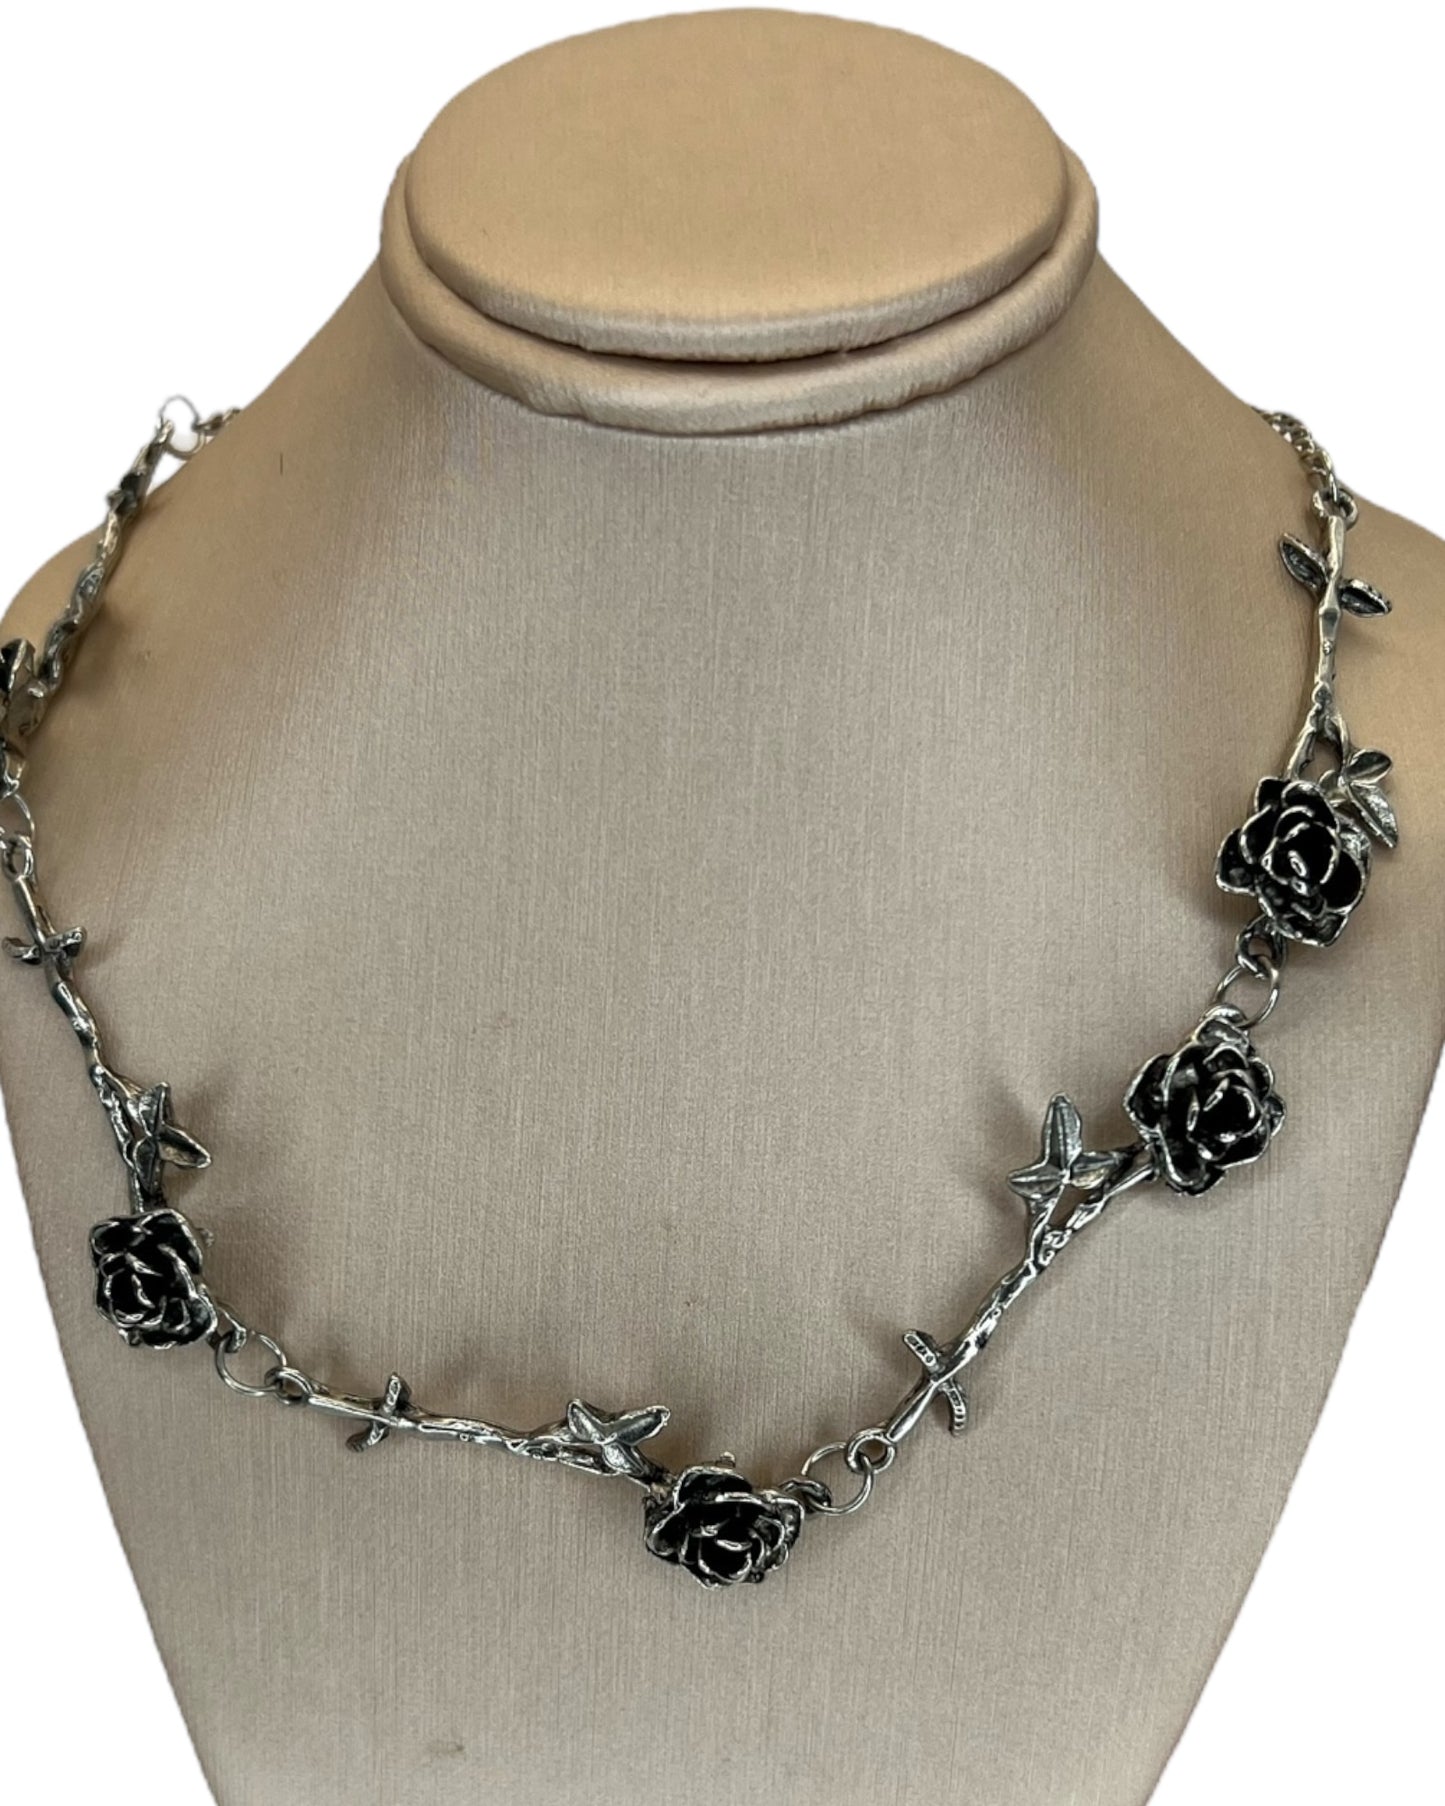 Vintage Rose Necklace